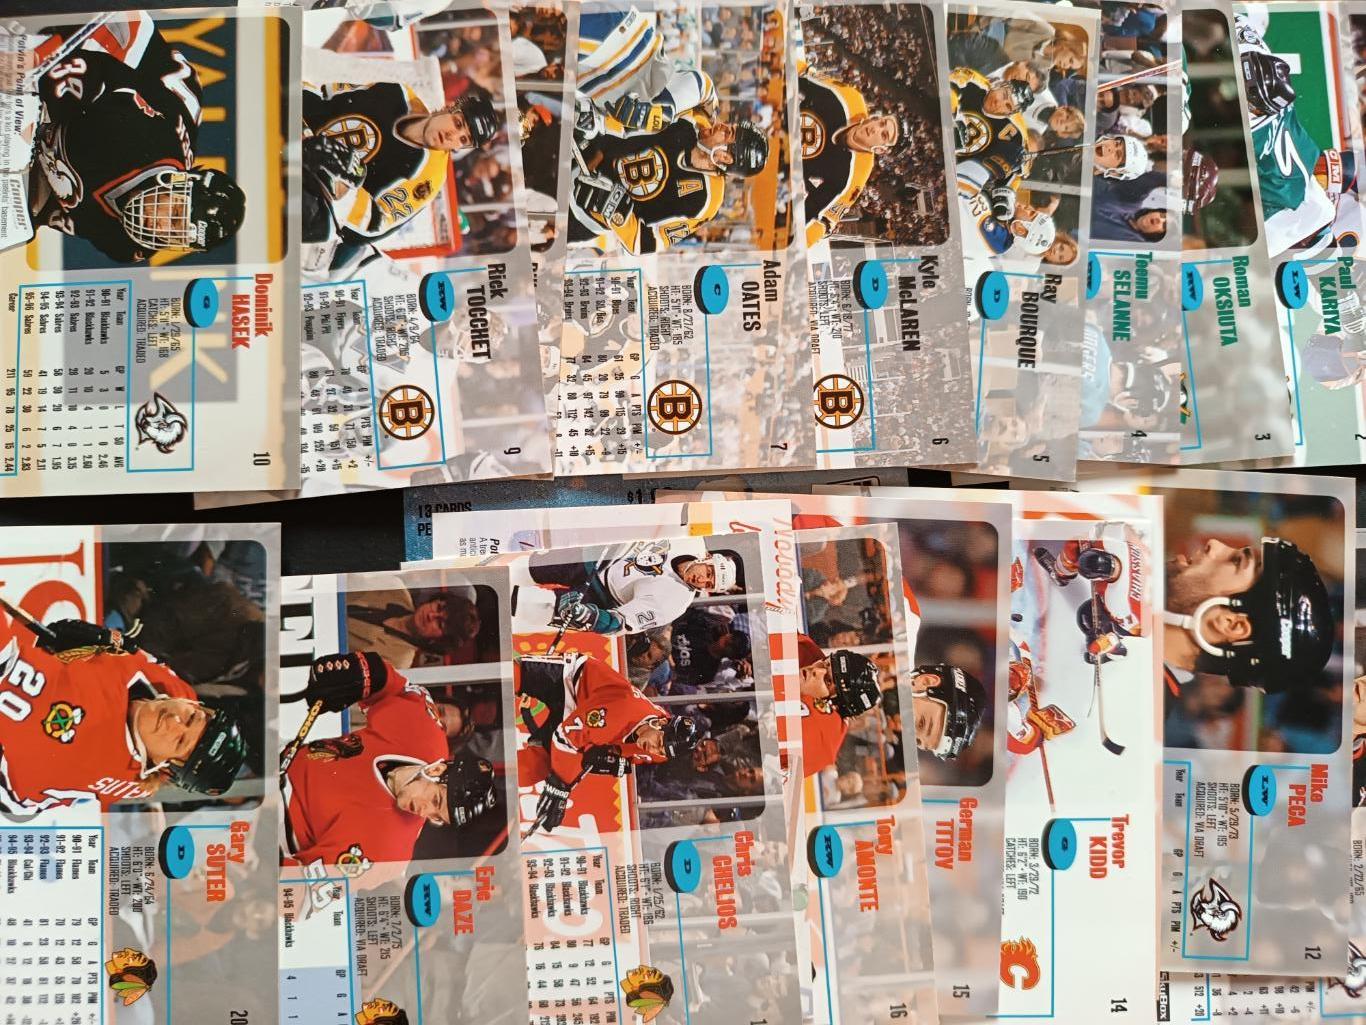 ХОККЕЙ НАБОР КАРТОЧЕК НХЛ IMPACT SKYBOX 1996-97 NHL HOCKEY CARD FULL SET #1-200 1